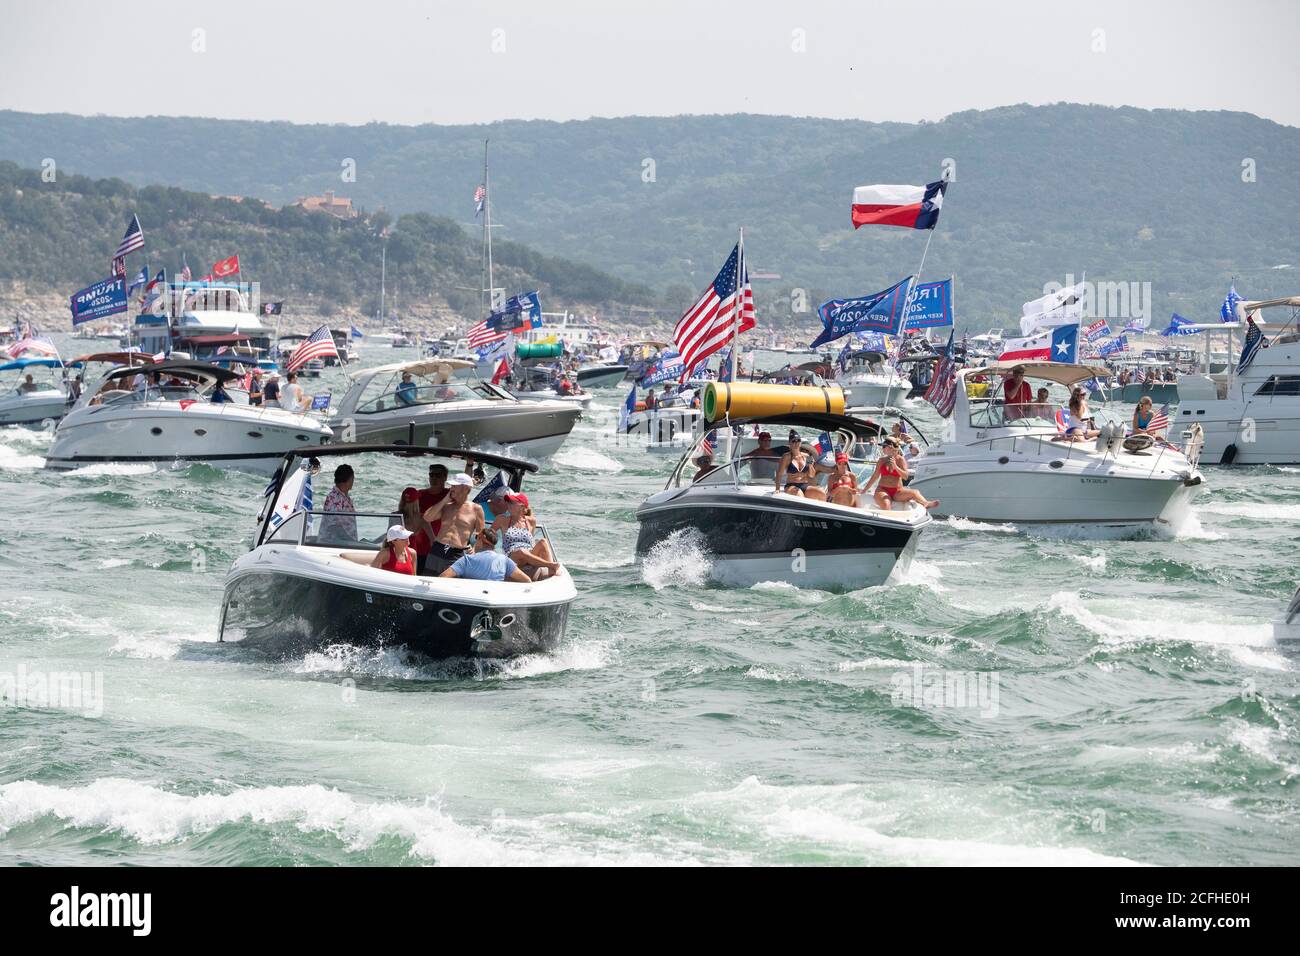 Lakeway, Texas USA 5 septembre 2020 : un défilé de bateaux pour montrer son soutien à la presse américaine Donald Trump a attiré des centaines de motomarines de toutes tailles, la plupart volant de plusieurs drapeaux de Trump. Plusieurs bateaux ont été submergés dans les énormes ébarges qui ont été piétinés par la flottille, mais aucune blessure n'a été signalée. Crédit : ©Bob Daemmrich/Alamy Live News Banque D'Images